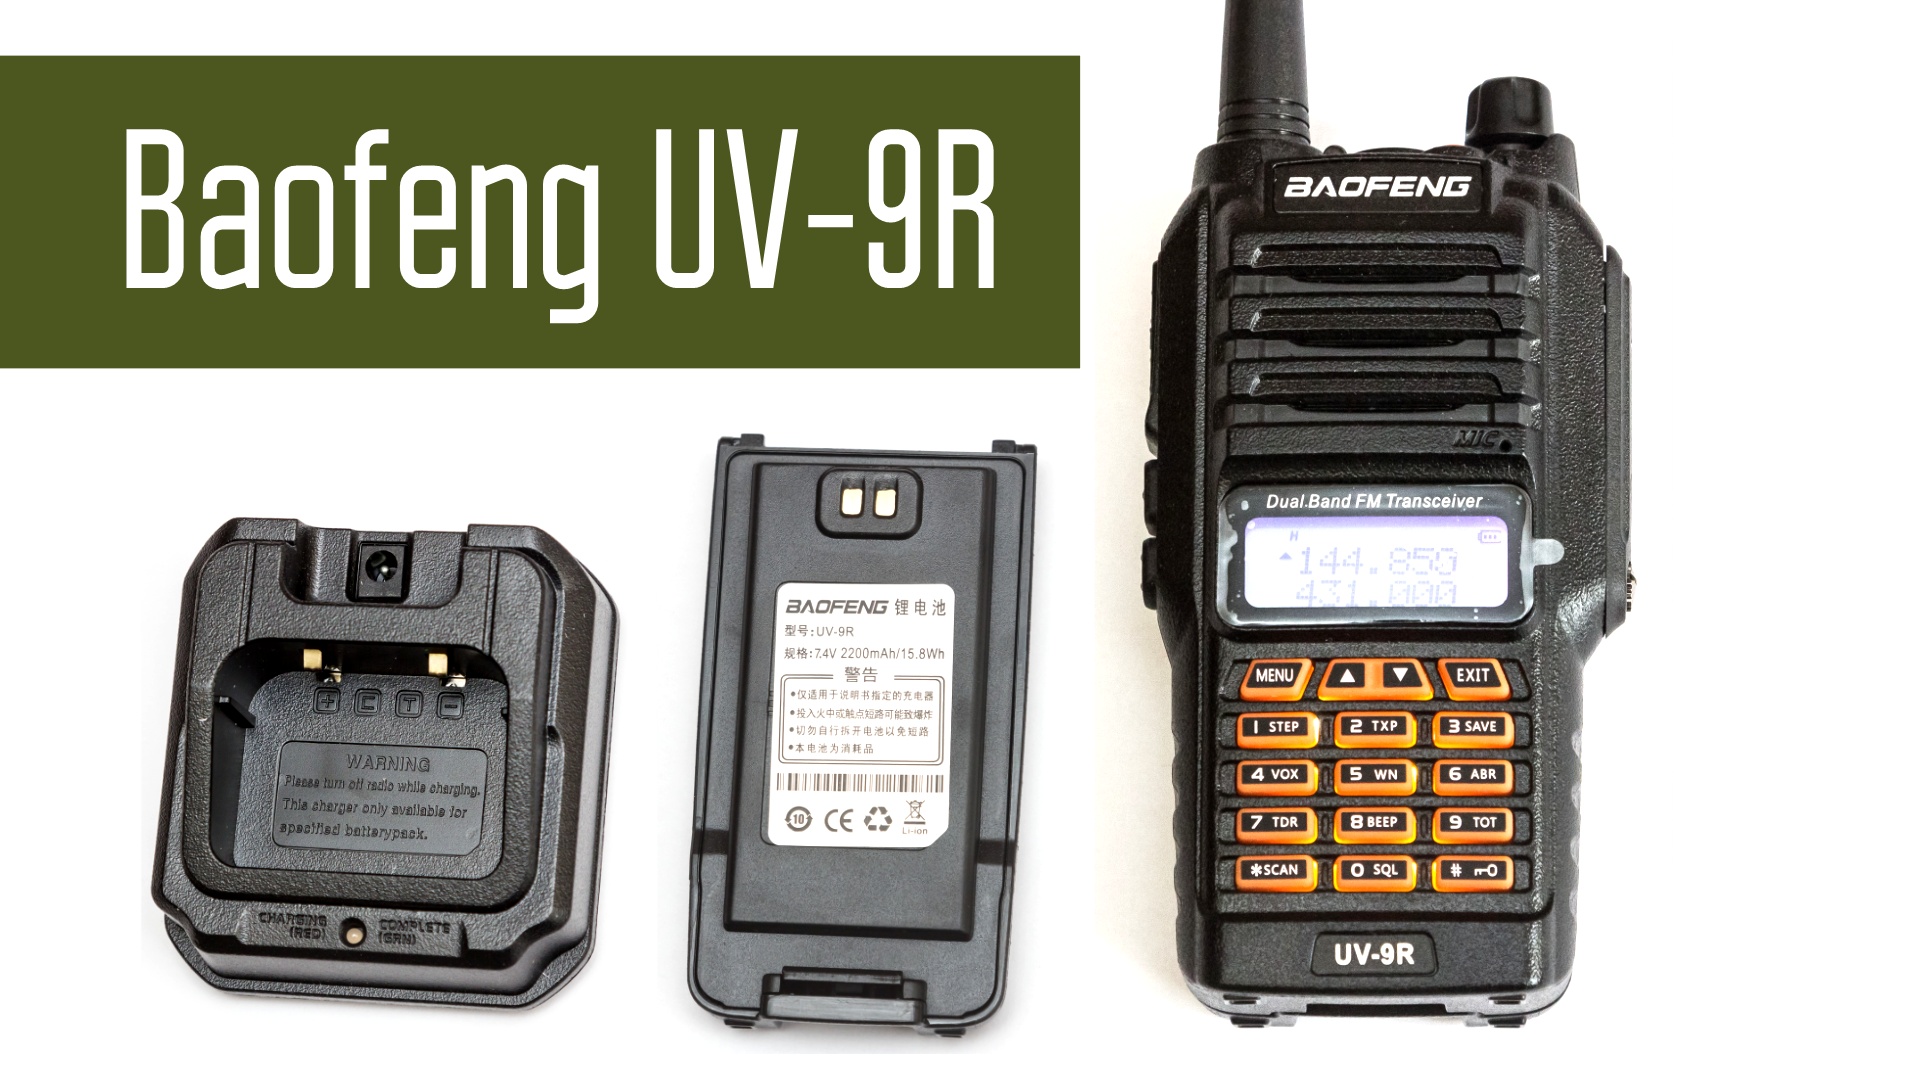 Baofeng UV-9R - Влагозащищенная радиостанция. Обзор, вскрытие, измерение мощности, приём сигналов.